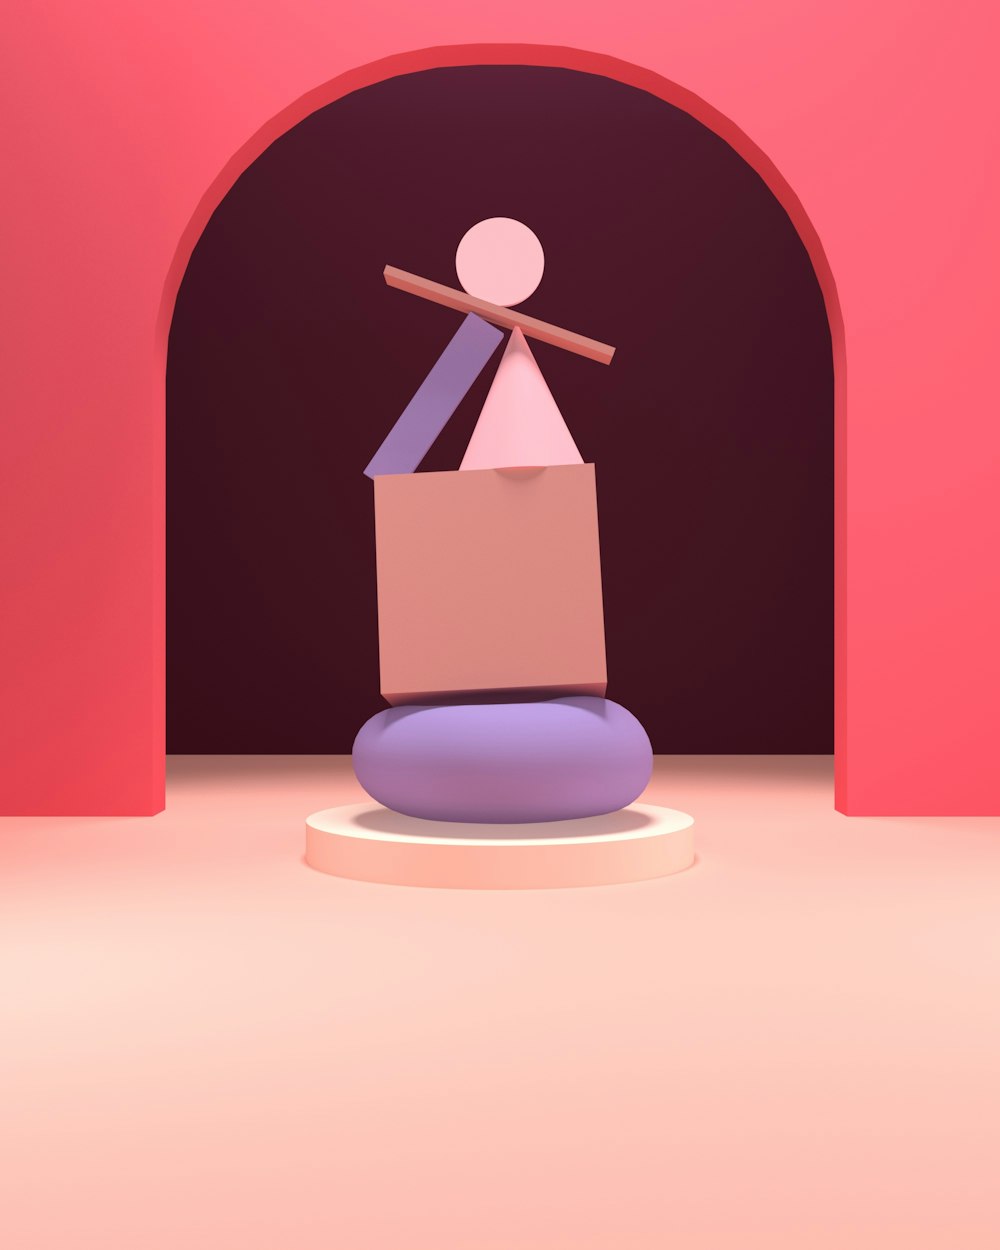 uma imagem estilizada de uma pessoa em pé em cima de uma caixa